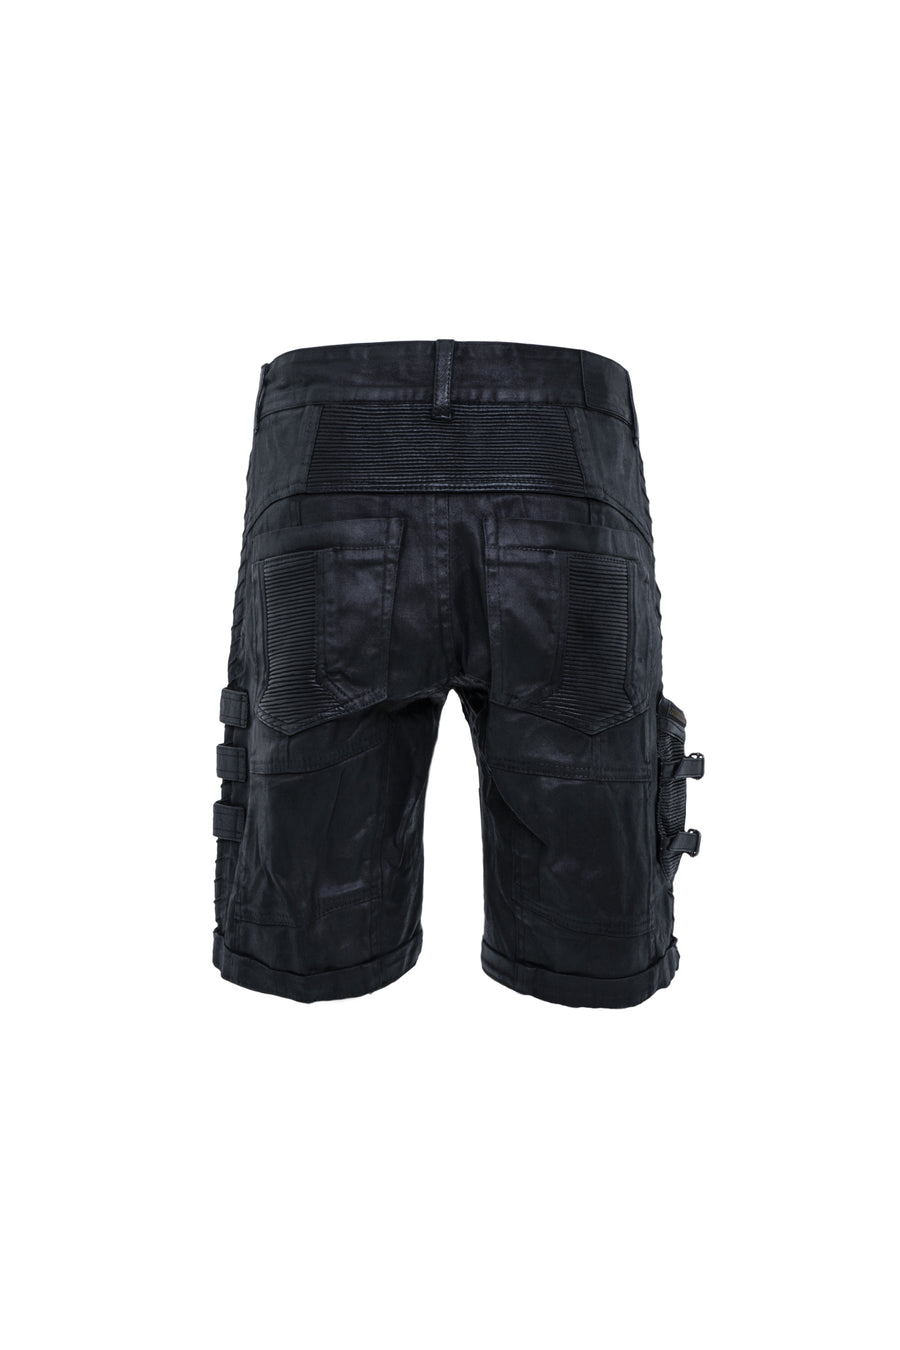 mens waxed textured tactical cargo shorts back drop pockets rib detail